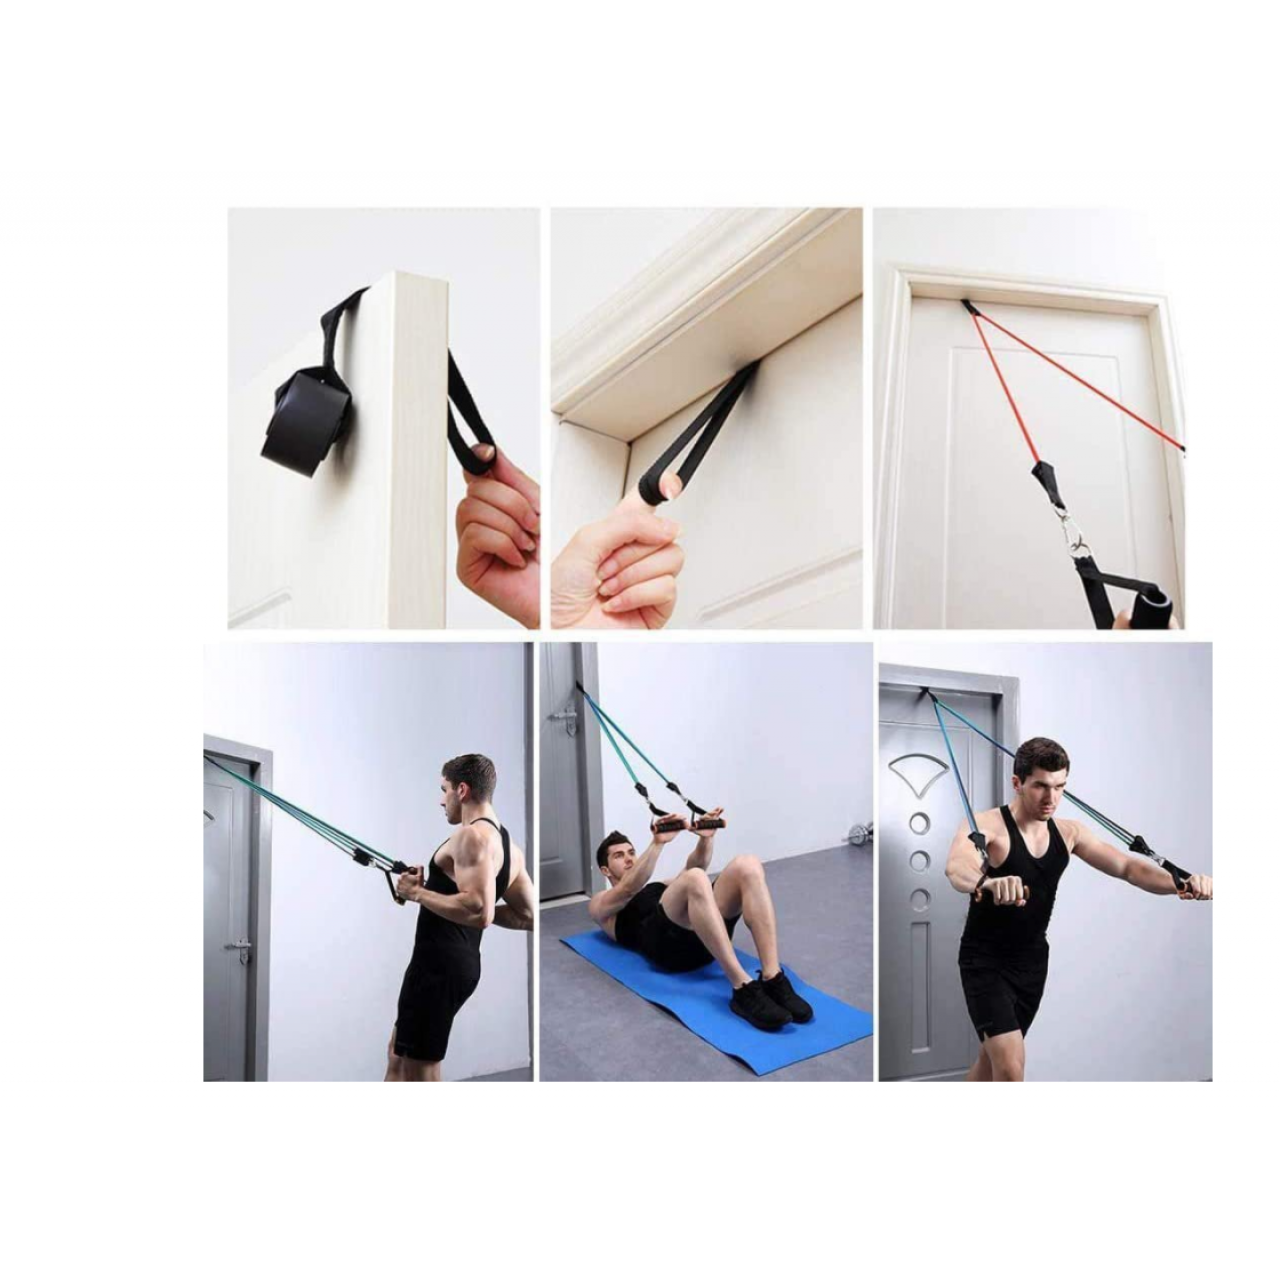 Λάστιχα γυμναστικής (αντίστασης) Wozinsky 11 Pack Exercise Resistance Bands with Handles Exercise Stretch Fitness Home Set Incl - 5005